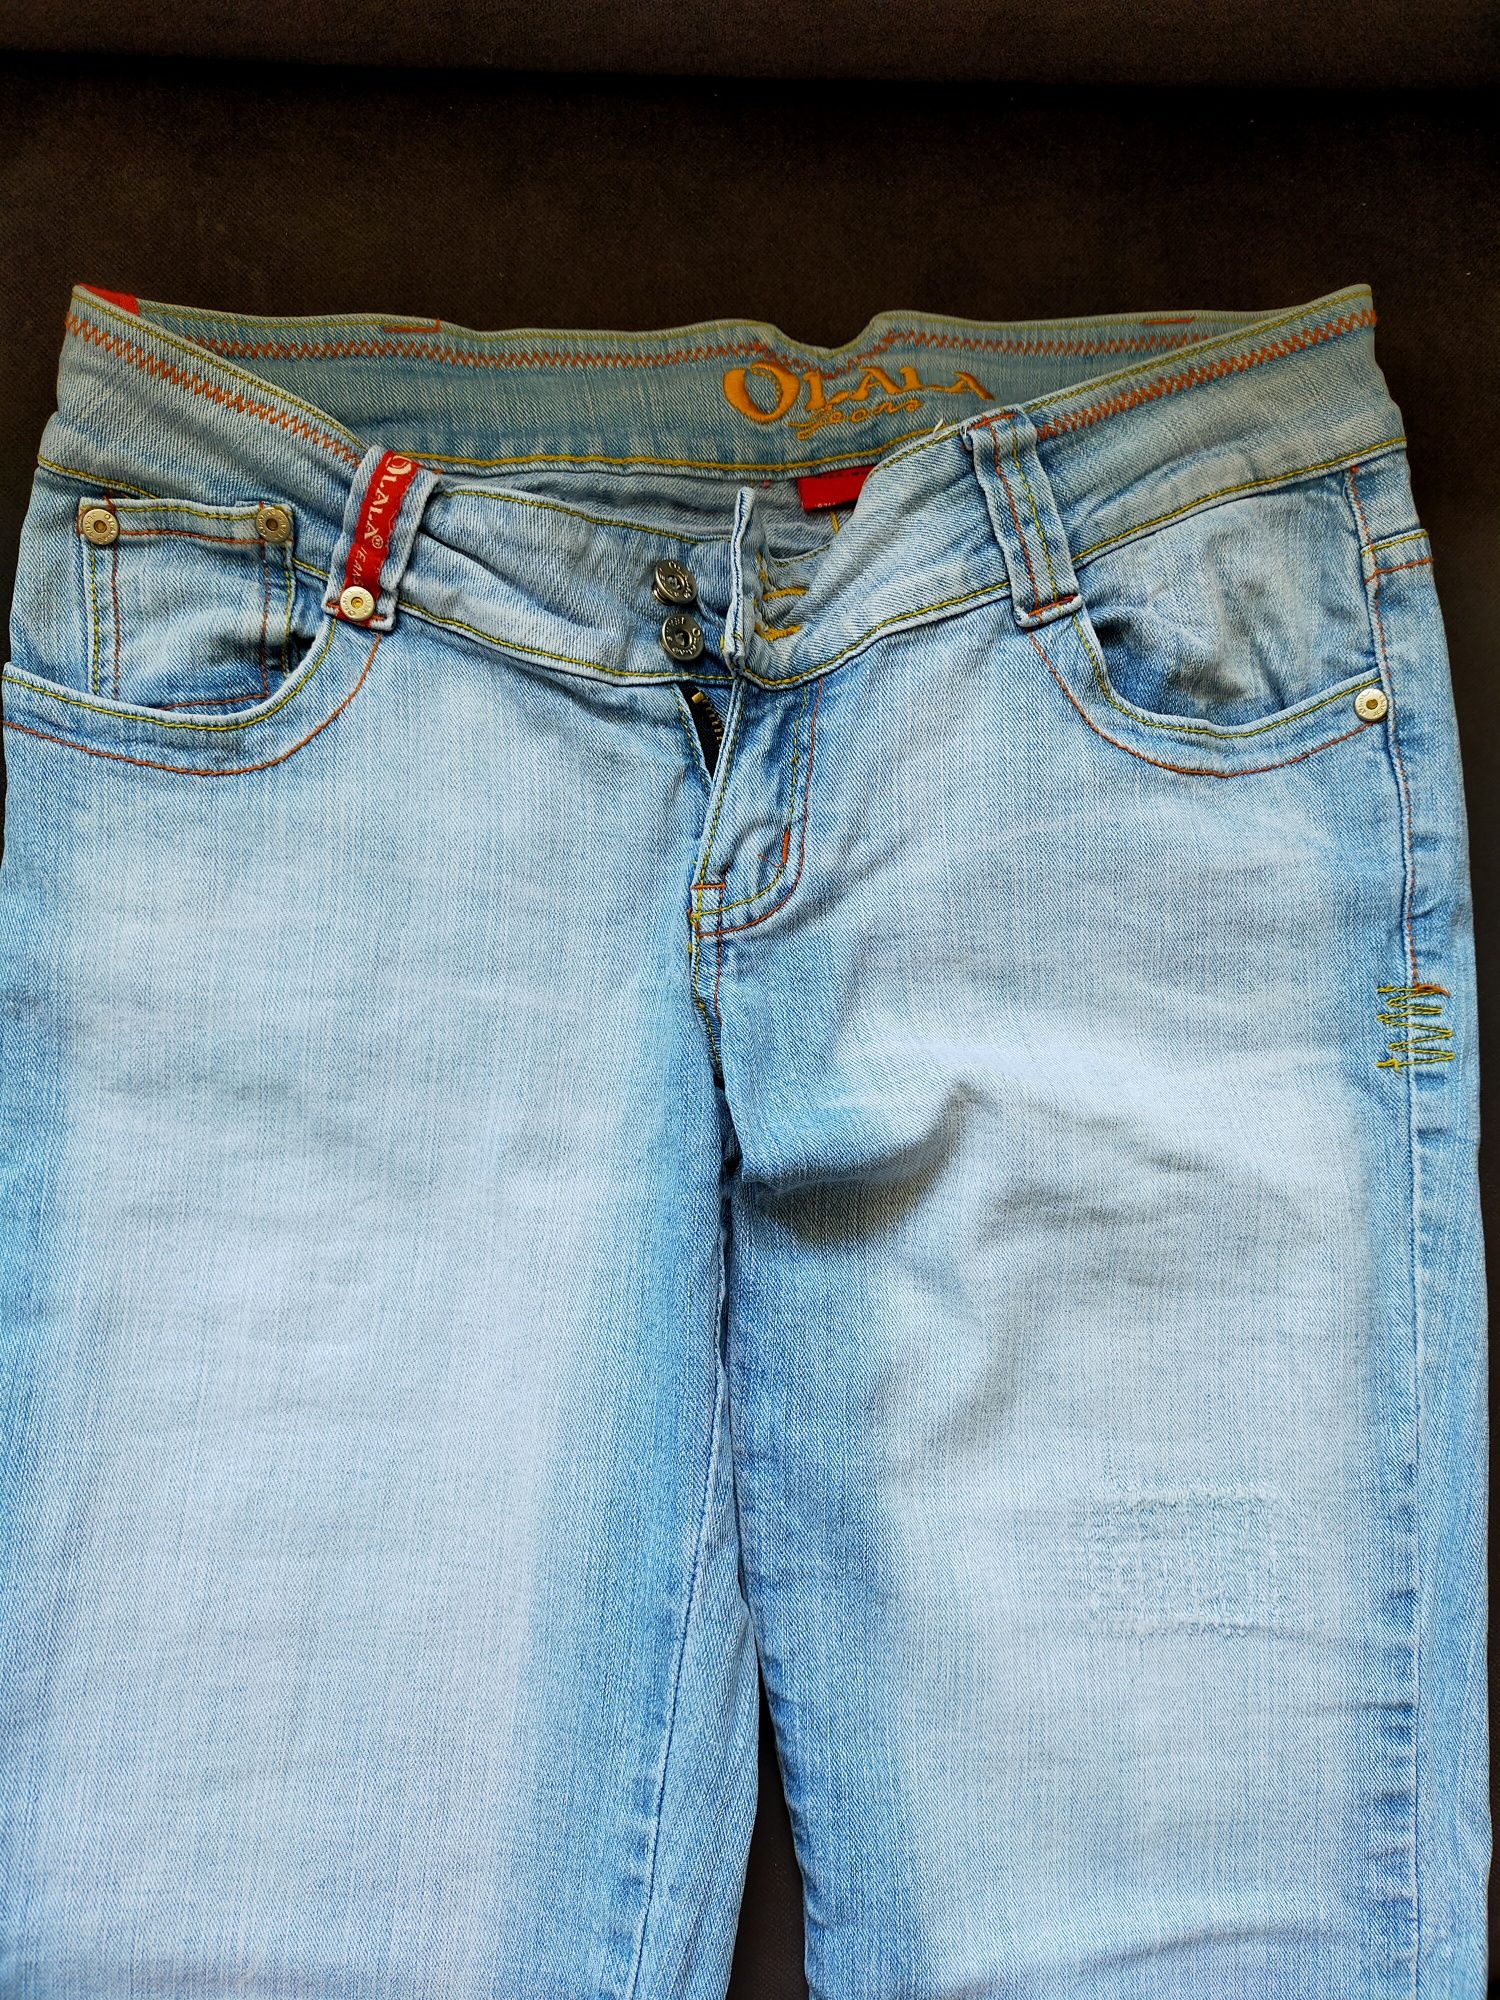 Spodnie biodrówki jasny dżins rozmiar 38